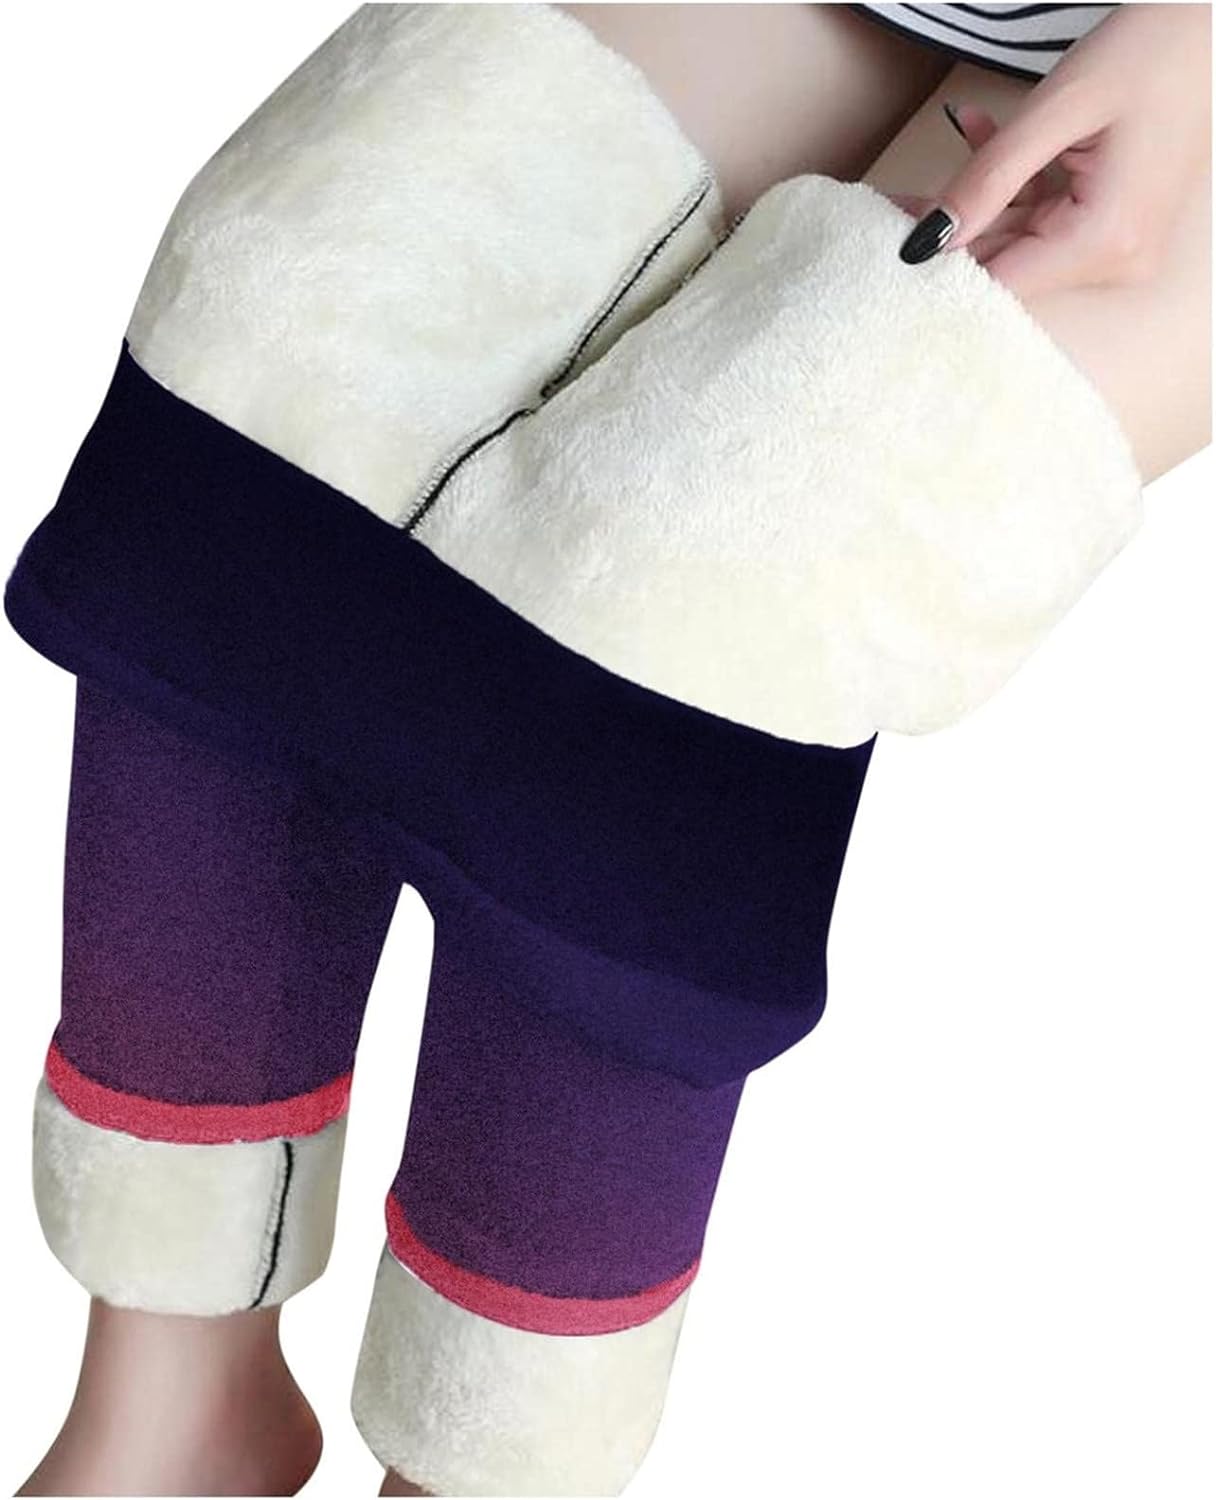 CLASSIC ESSENTIALS - Winter Warm Leggings Women's